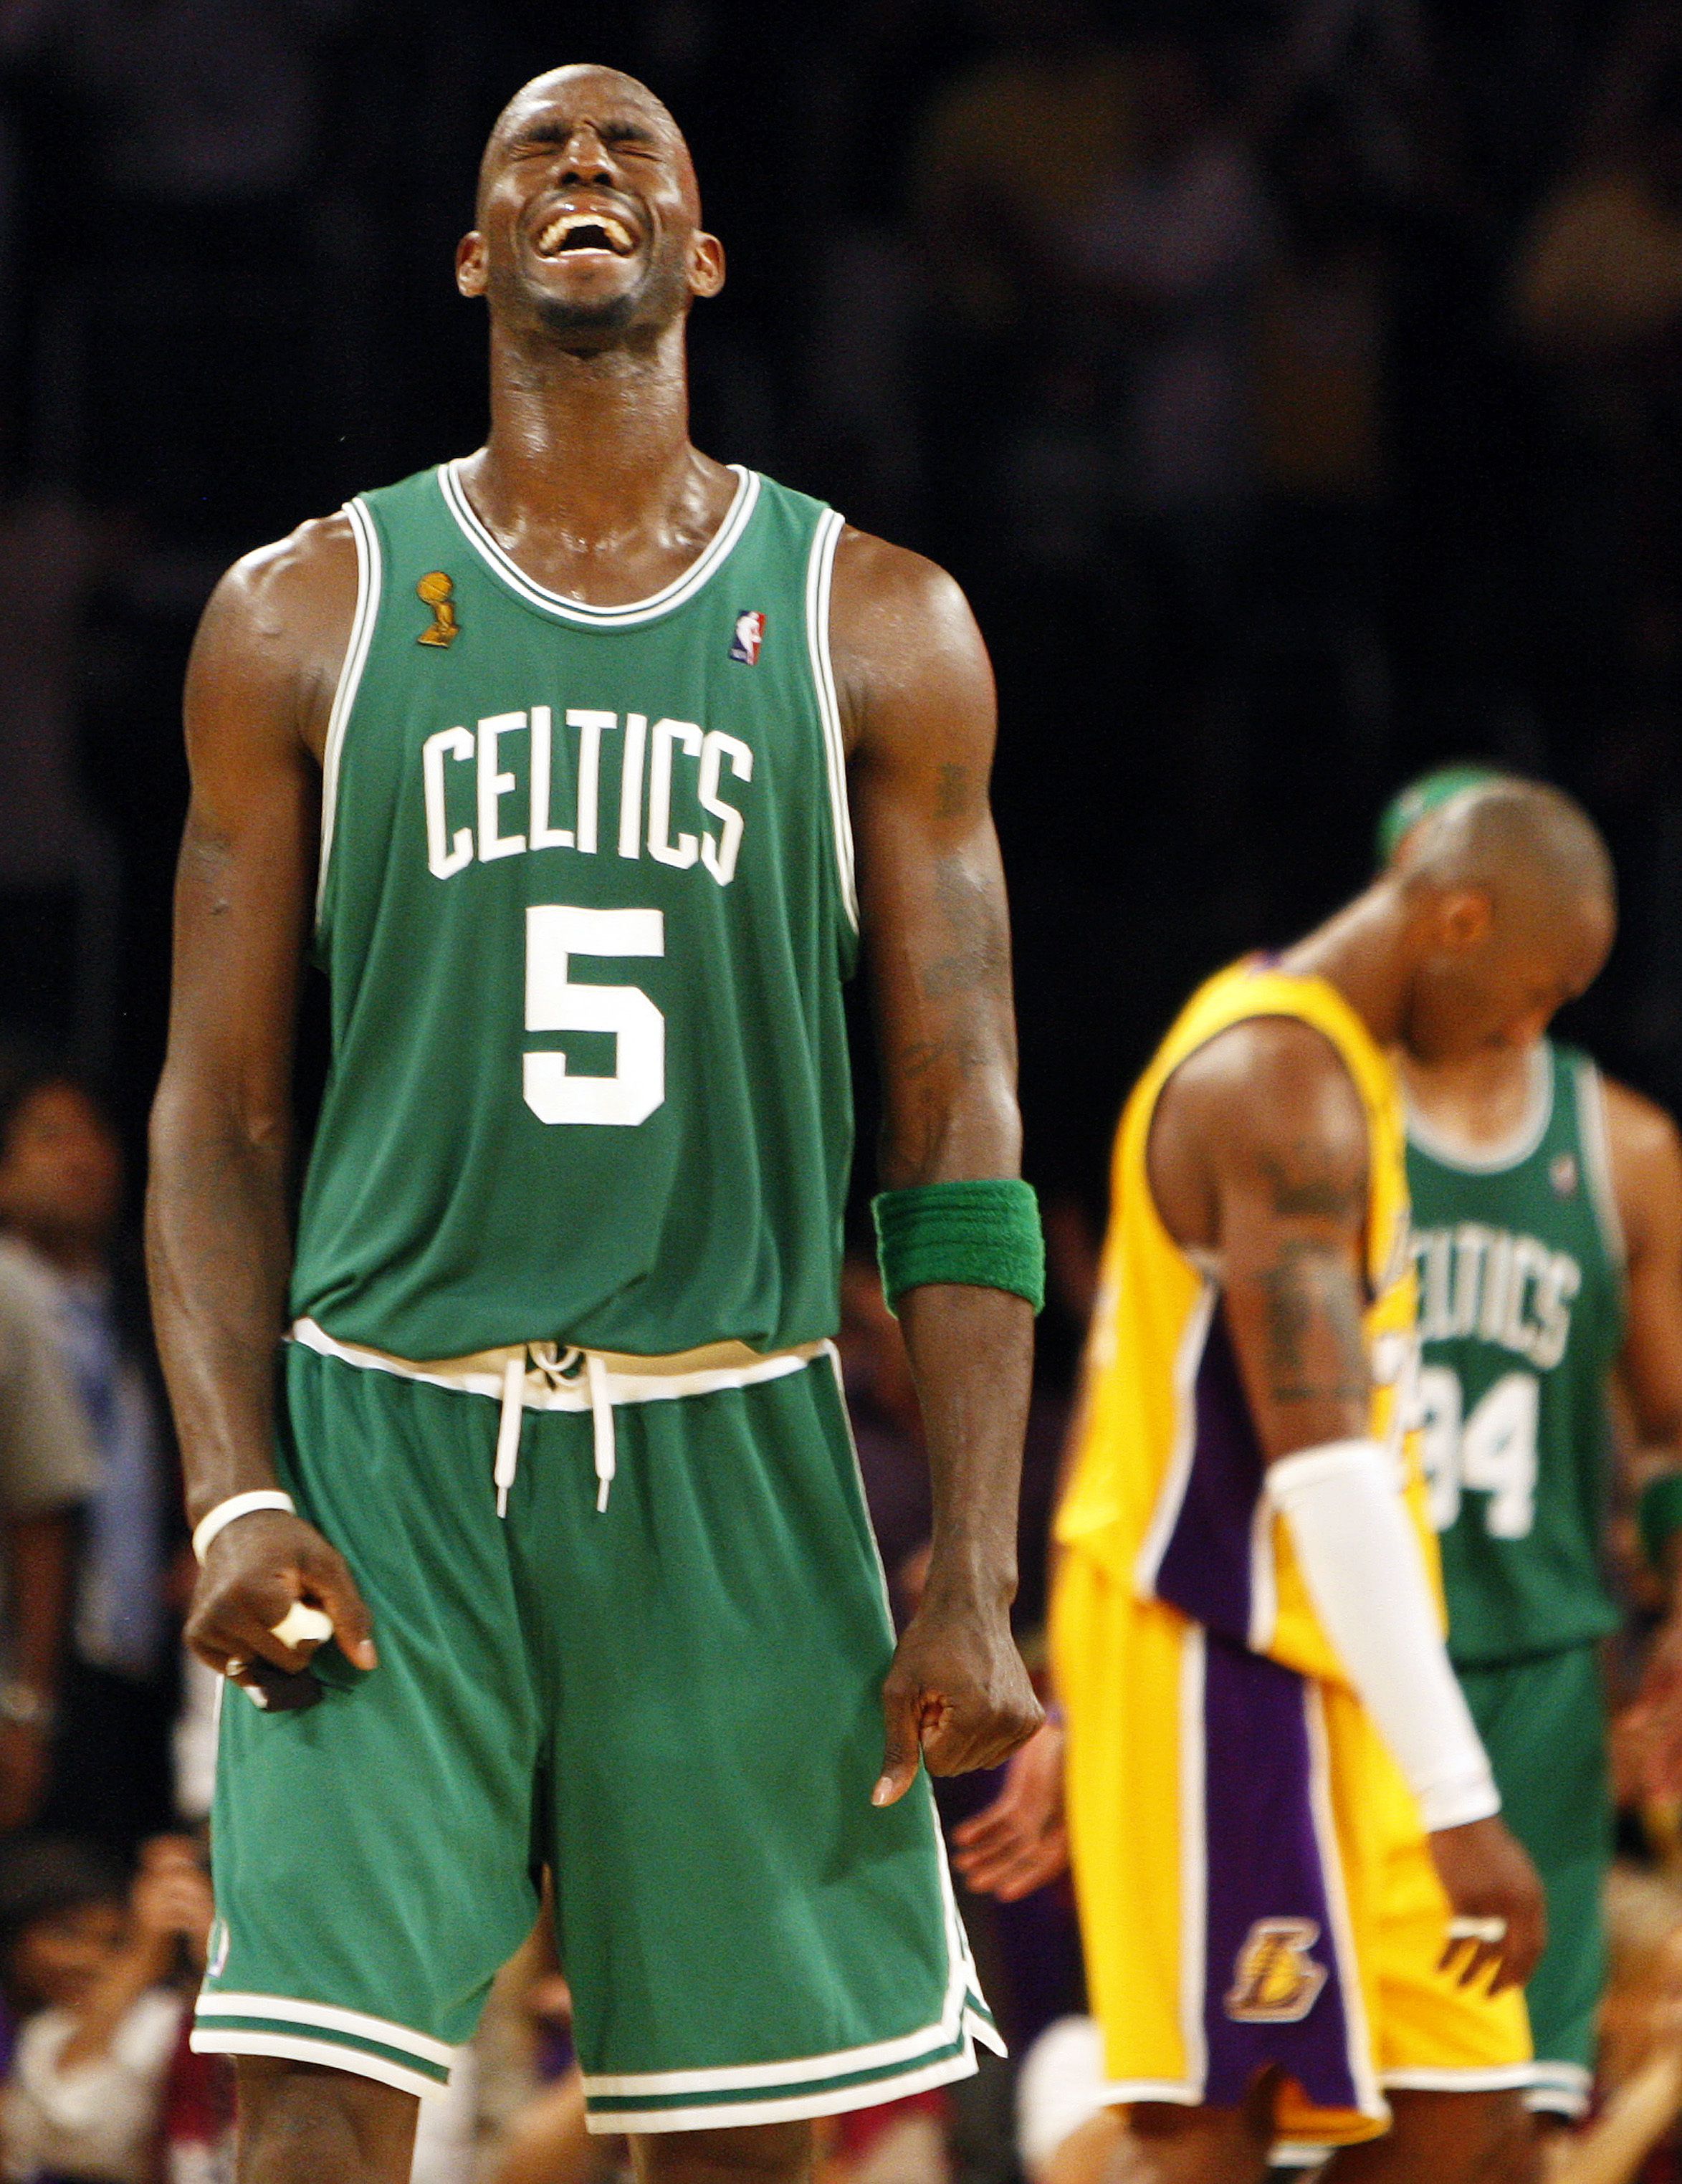 Boston Celtics to retire Kevin Garnett's jersey in 2020-21 season